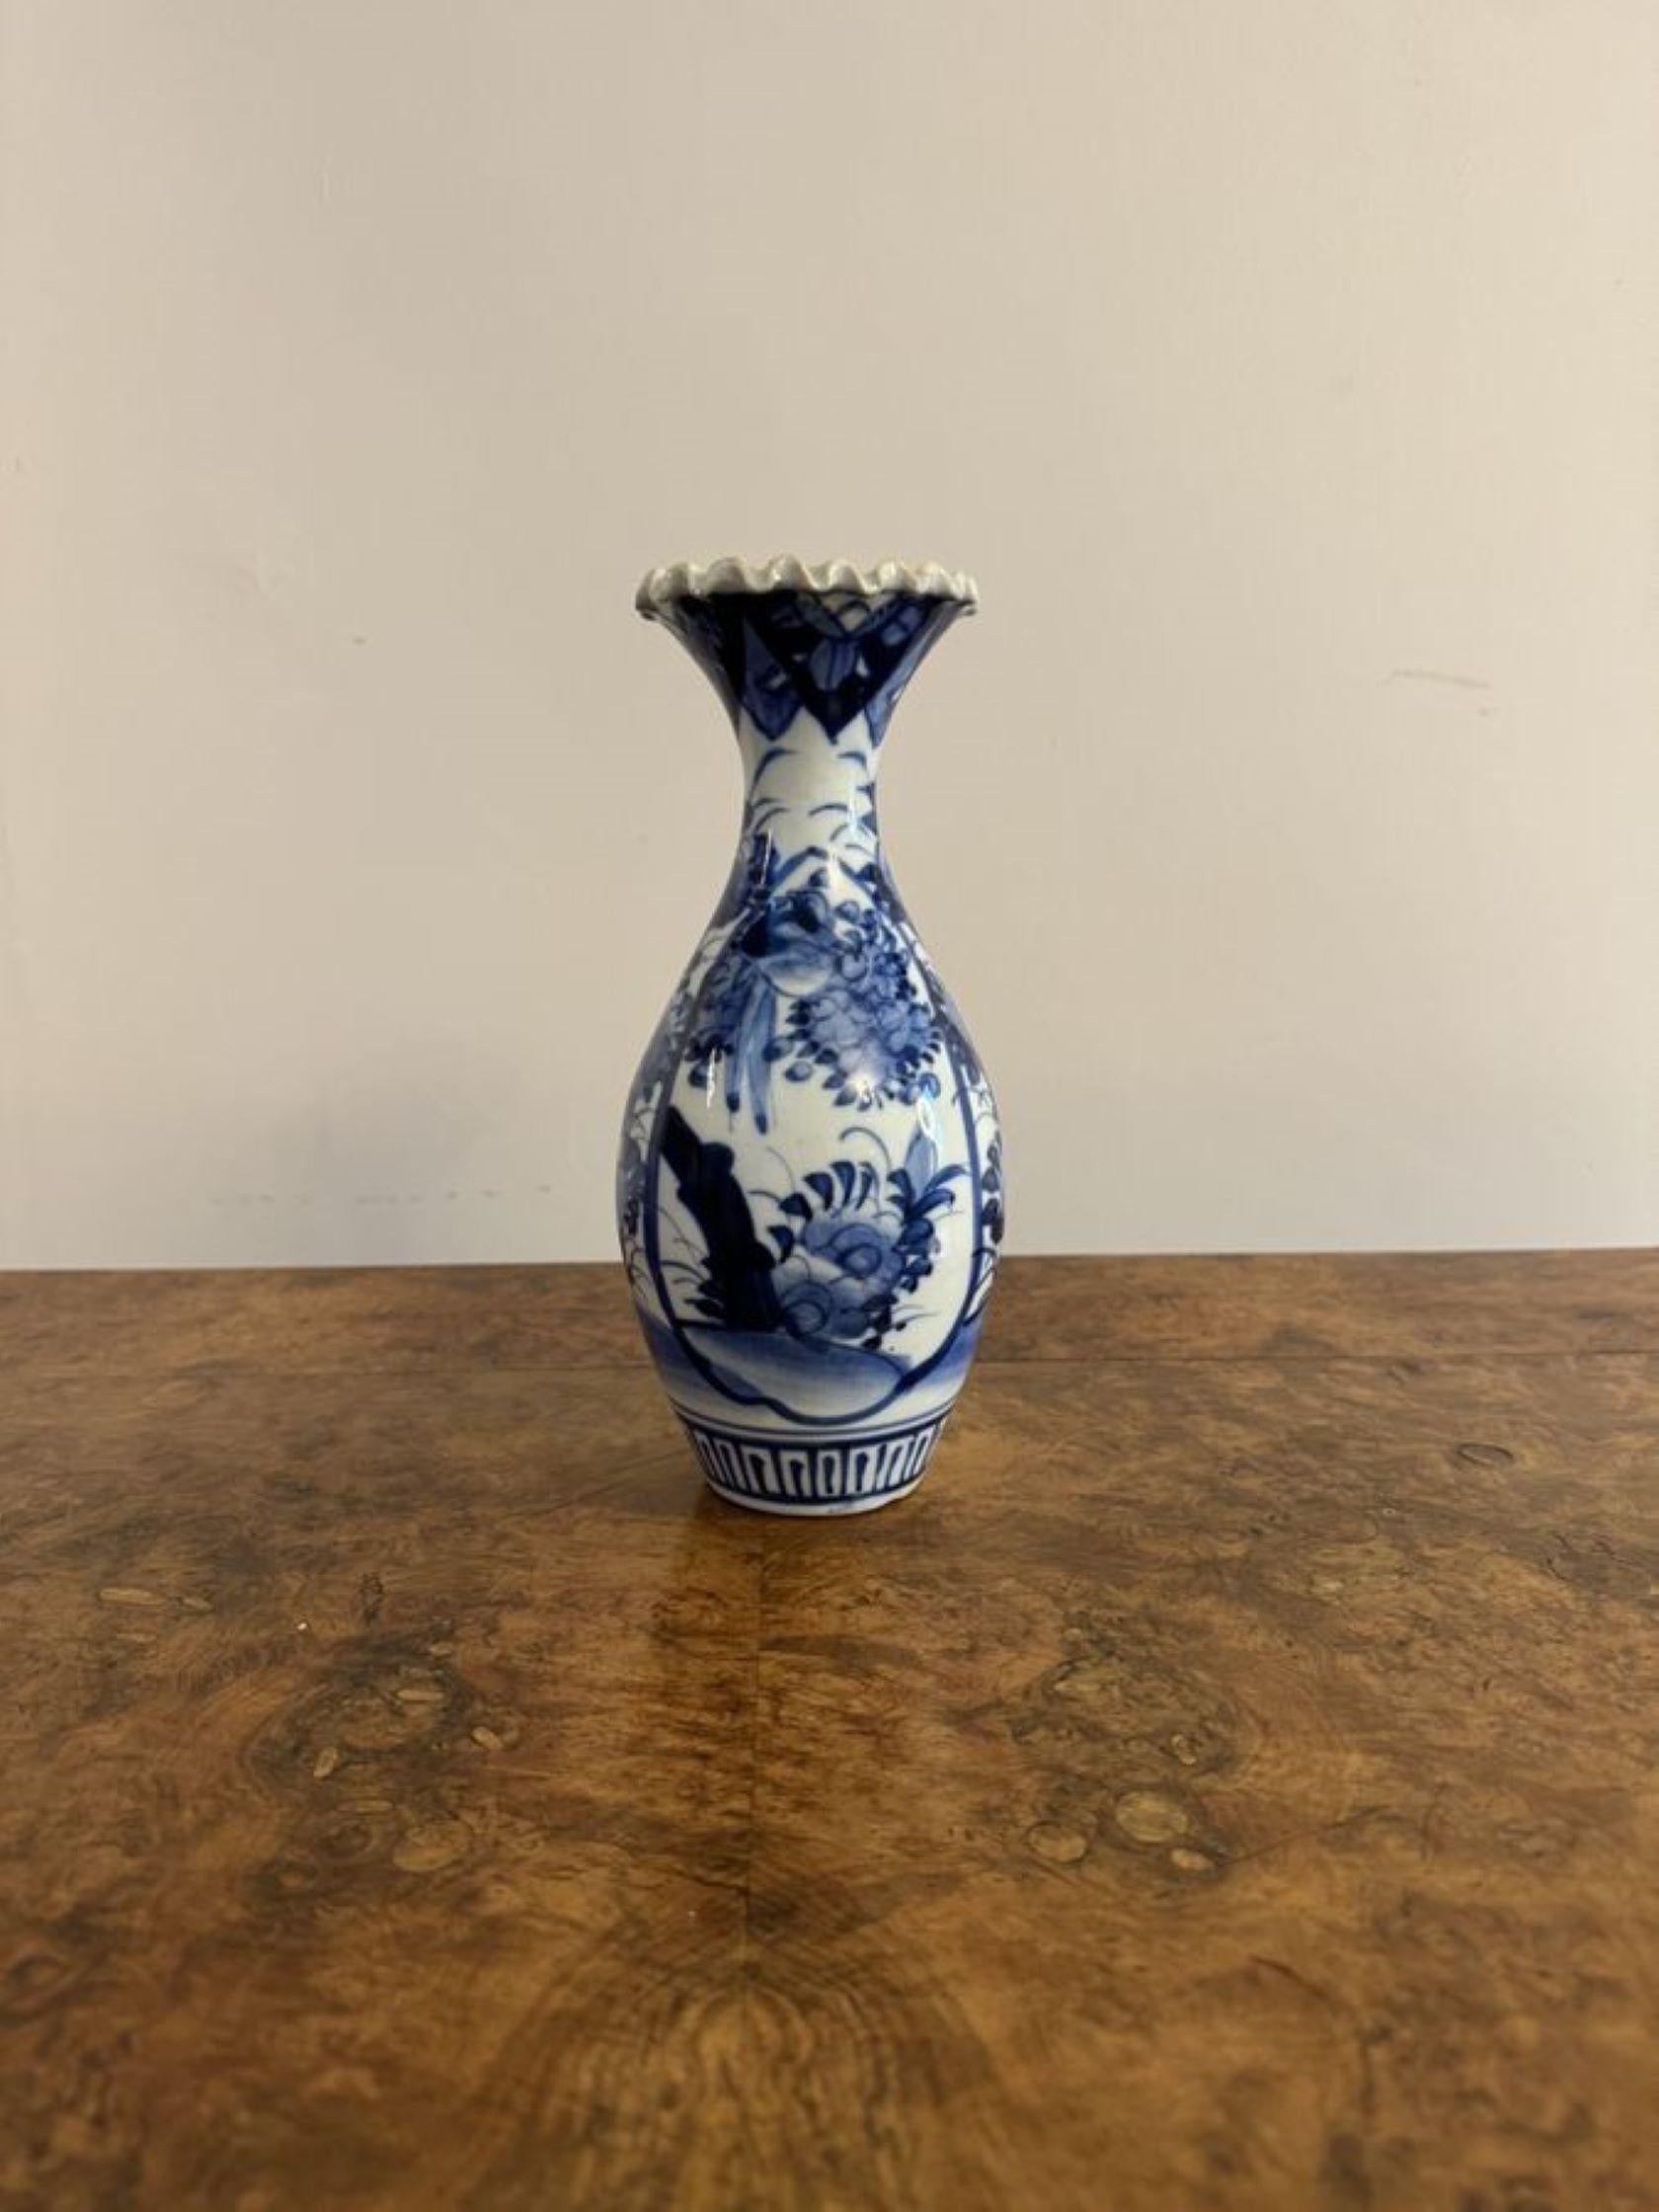 Charmante Qualität antiken japanischen Imari blau und weiß Baluster Vase mit einem charmanten Qualität antiken japanischen Imari blau und weiß Baluster Vase handbemalt in atemberaubenden blauen und weißen Farben mit Blumen in blau auf einem weißen